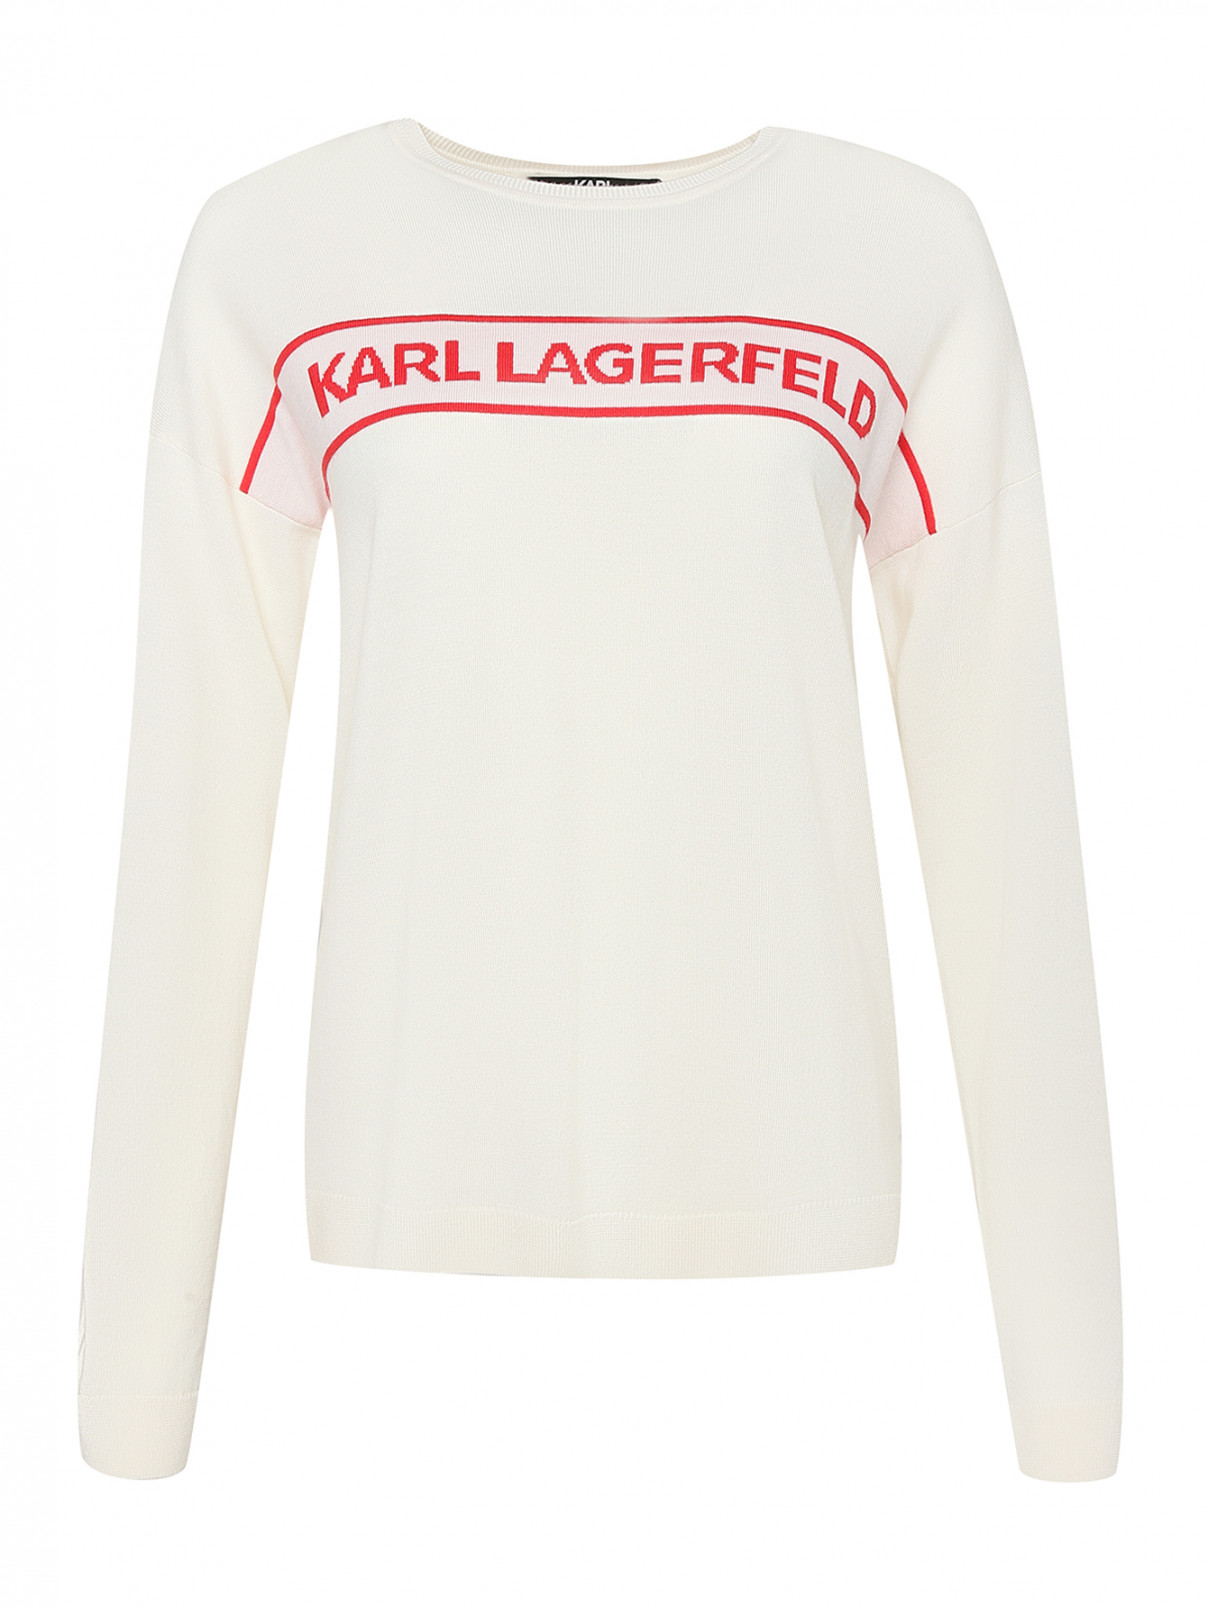 Джемпер из шерсти с надписью Karl Lagerfeld  –  Общий вид  – Цвет:  Белый